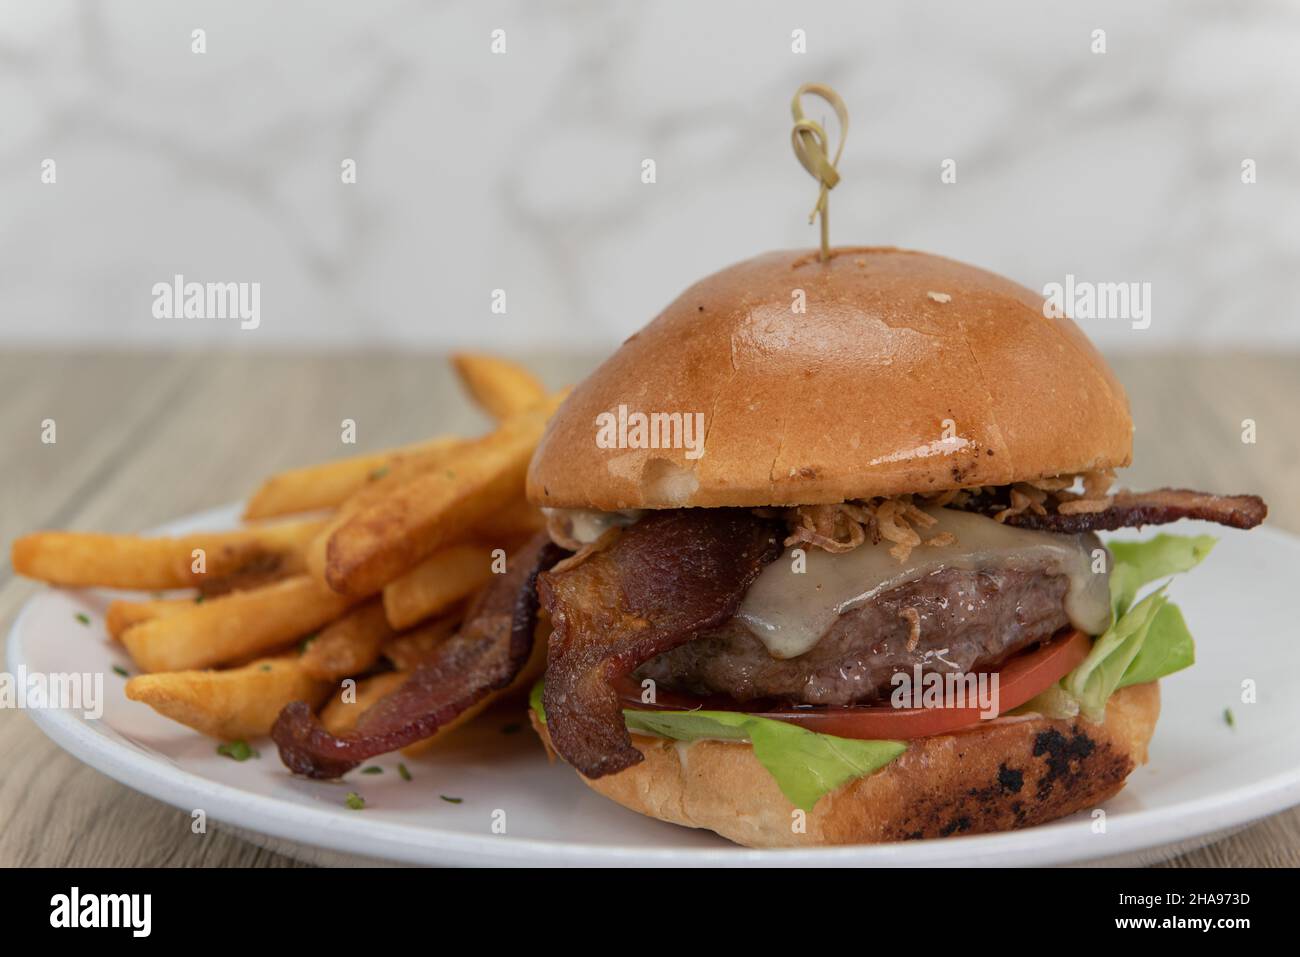 Présentation artistique du fromage fondu et du hamburger au bacon sur un pain beurré servi avec des frites croquantes. Banque D'Images